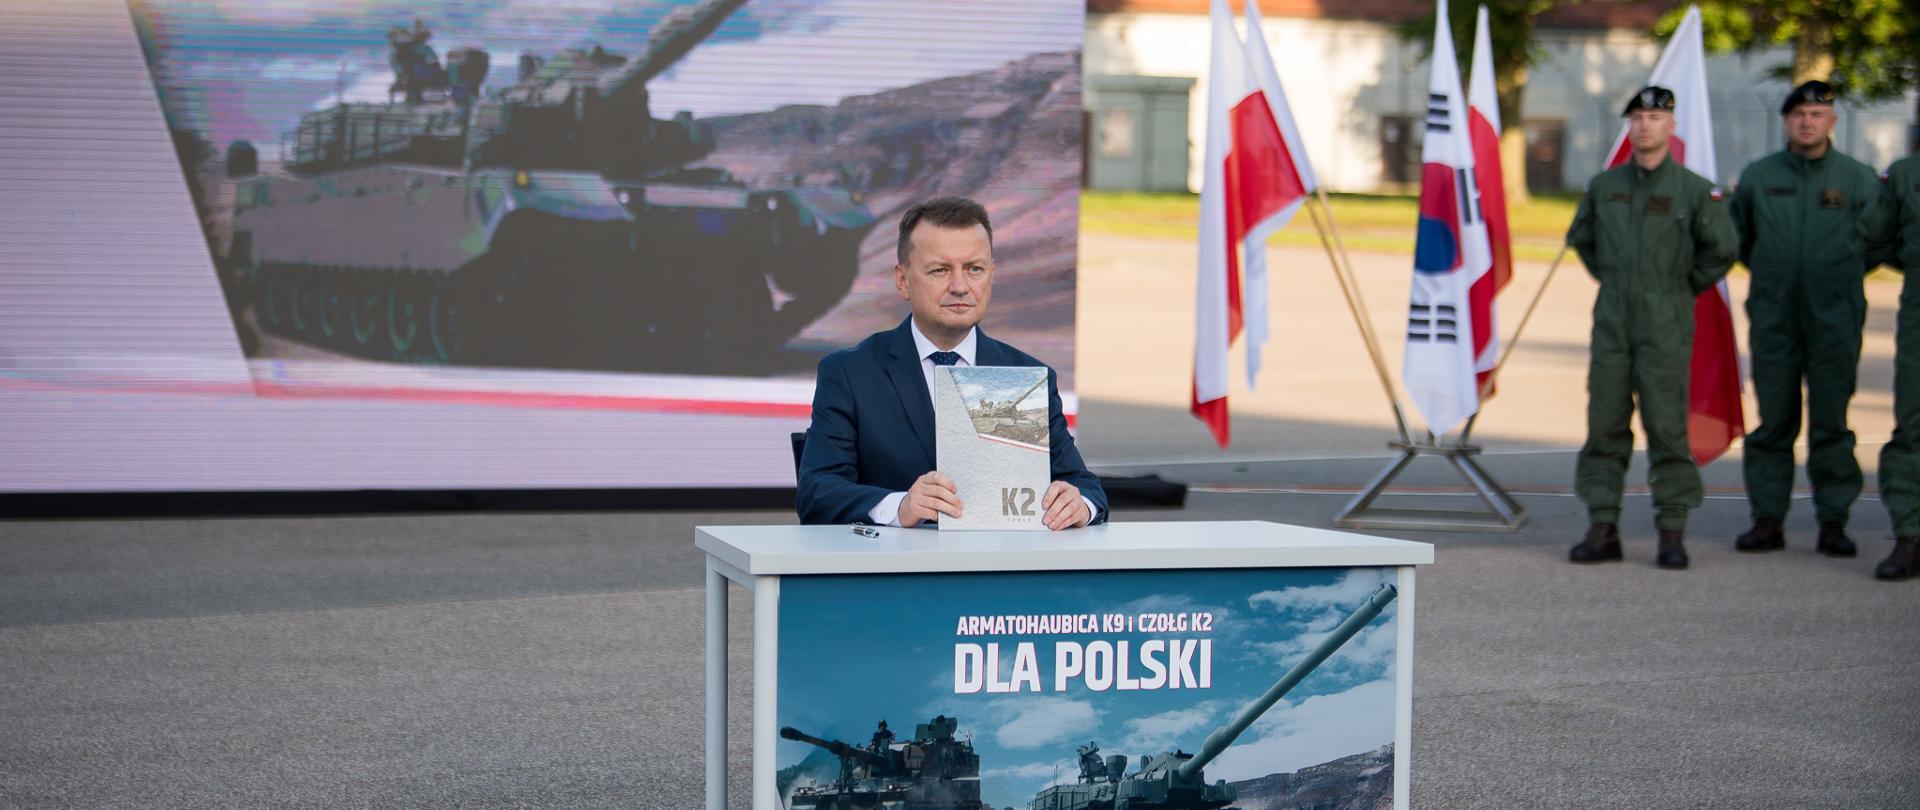 W piątek 26 sierpnia w Morągu wicepremier Mariusz Błaszczak zatwierdził umowy wykonawcze na dostawy koreańskich 180 czołgów K2 oraz 212 haubic K9 dla Wojska Polskiego.